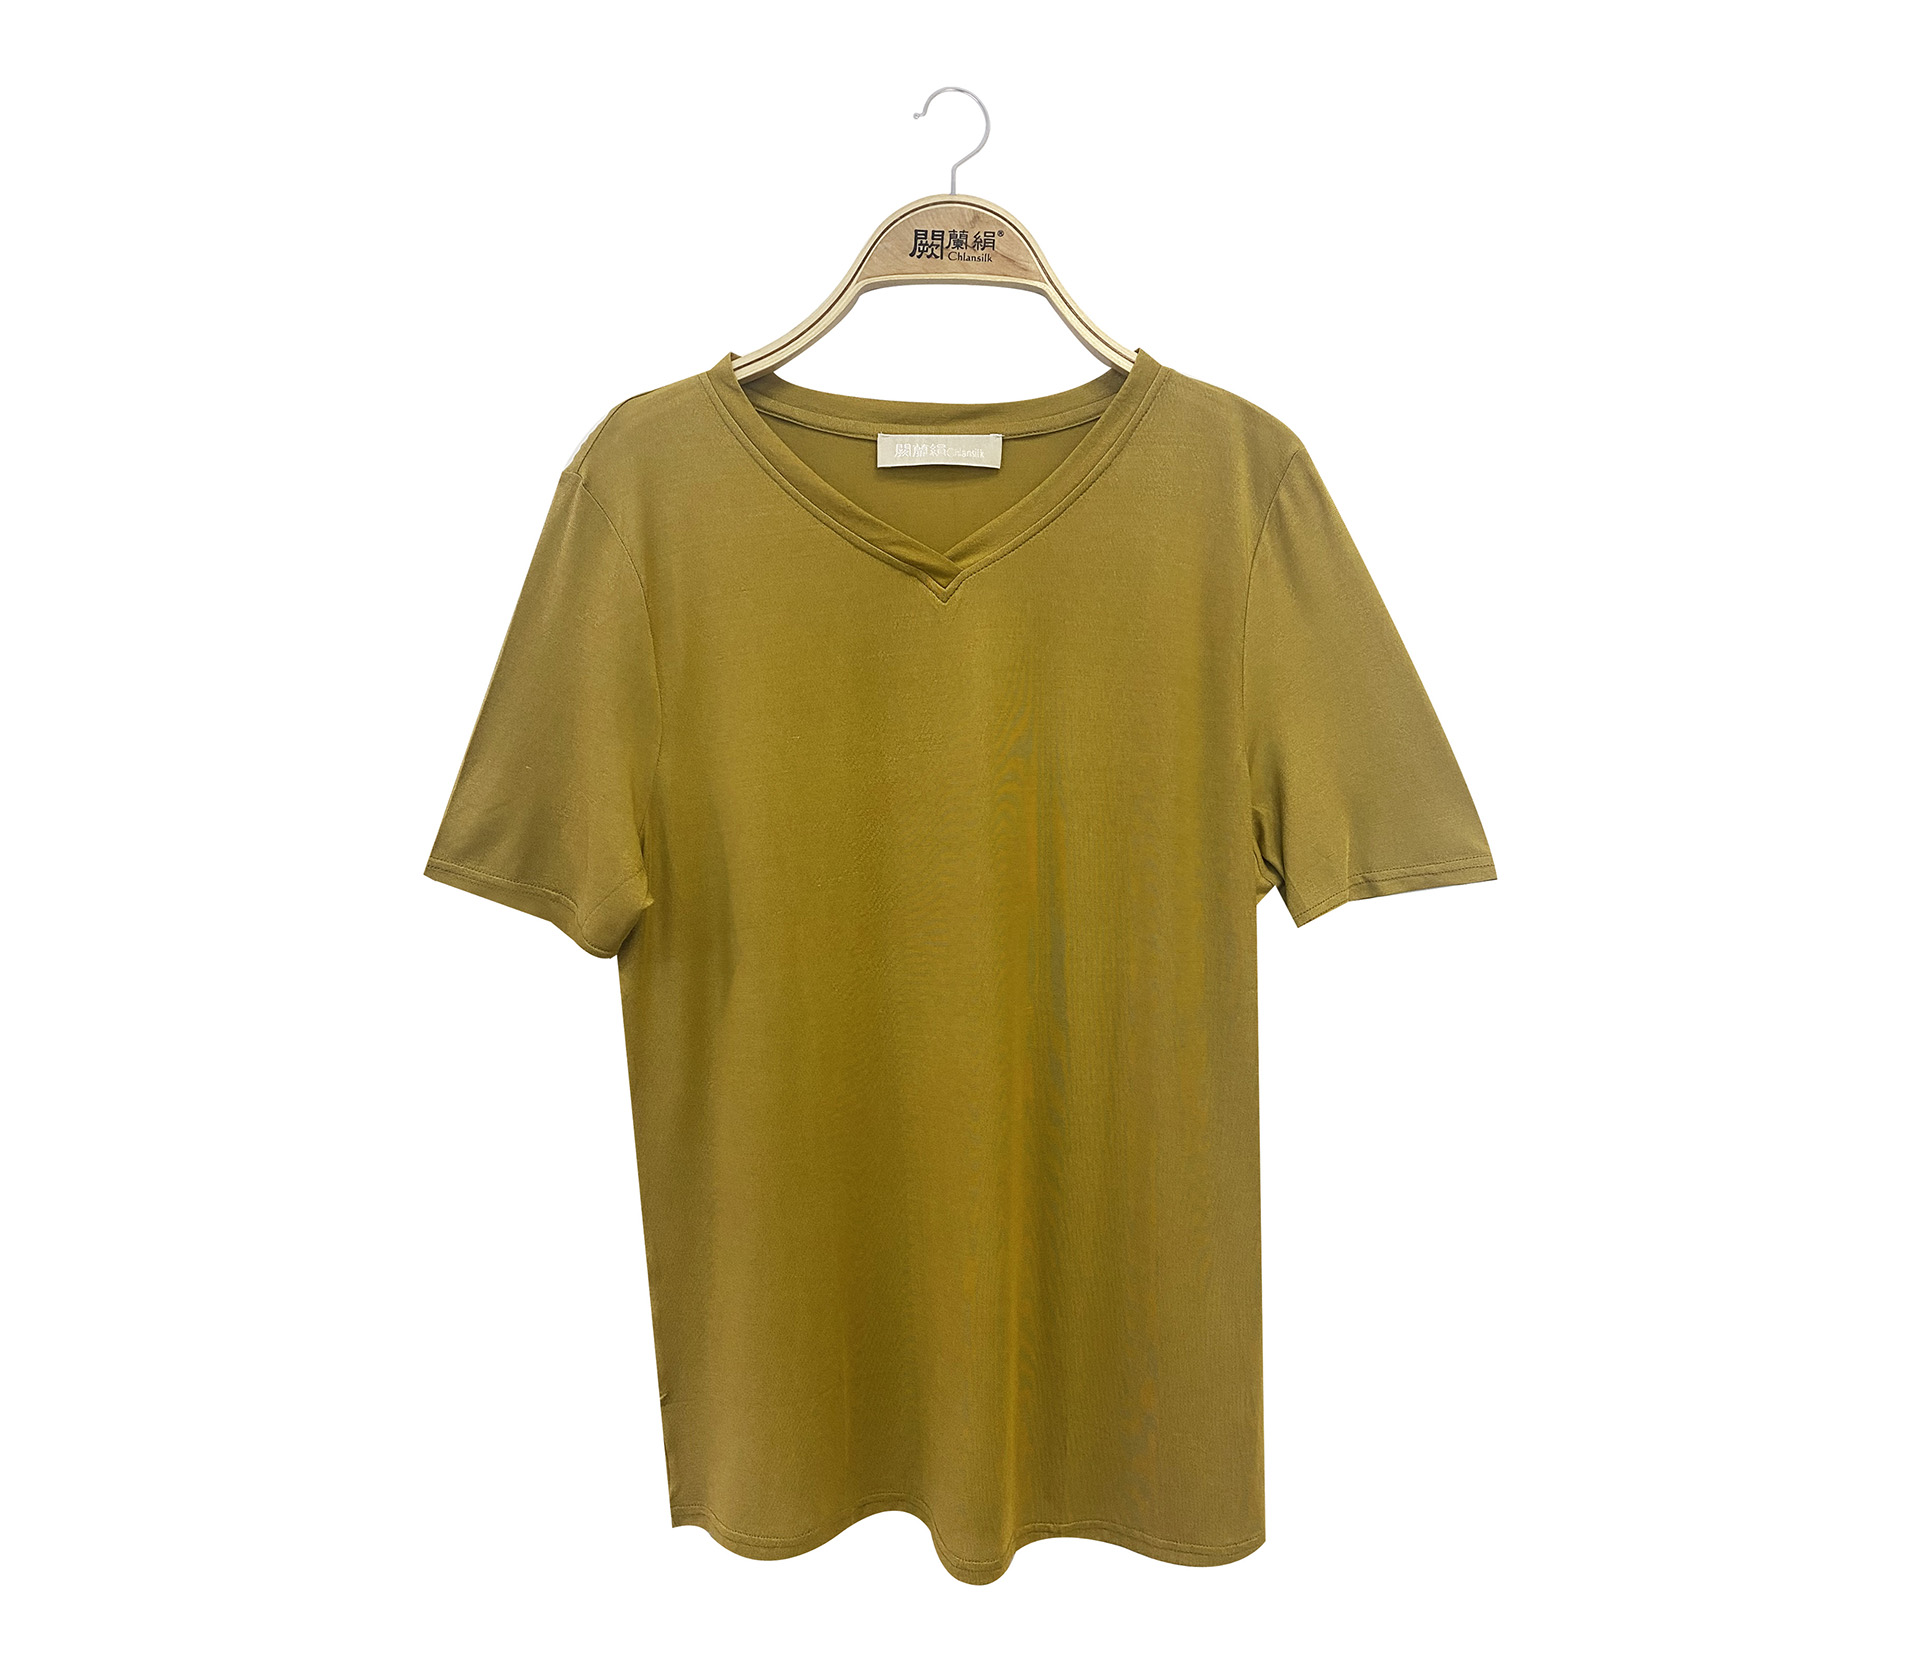 闕蘭絹石墨烯蠶絲V領短袖衛生衣 - 黃色 - M9911